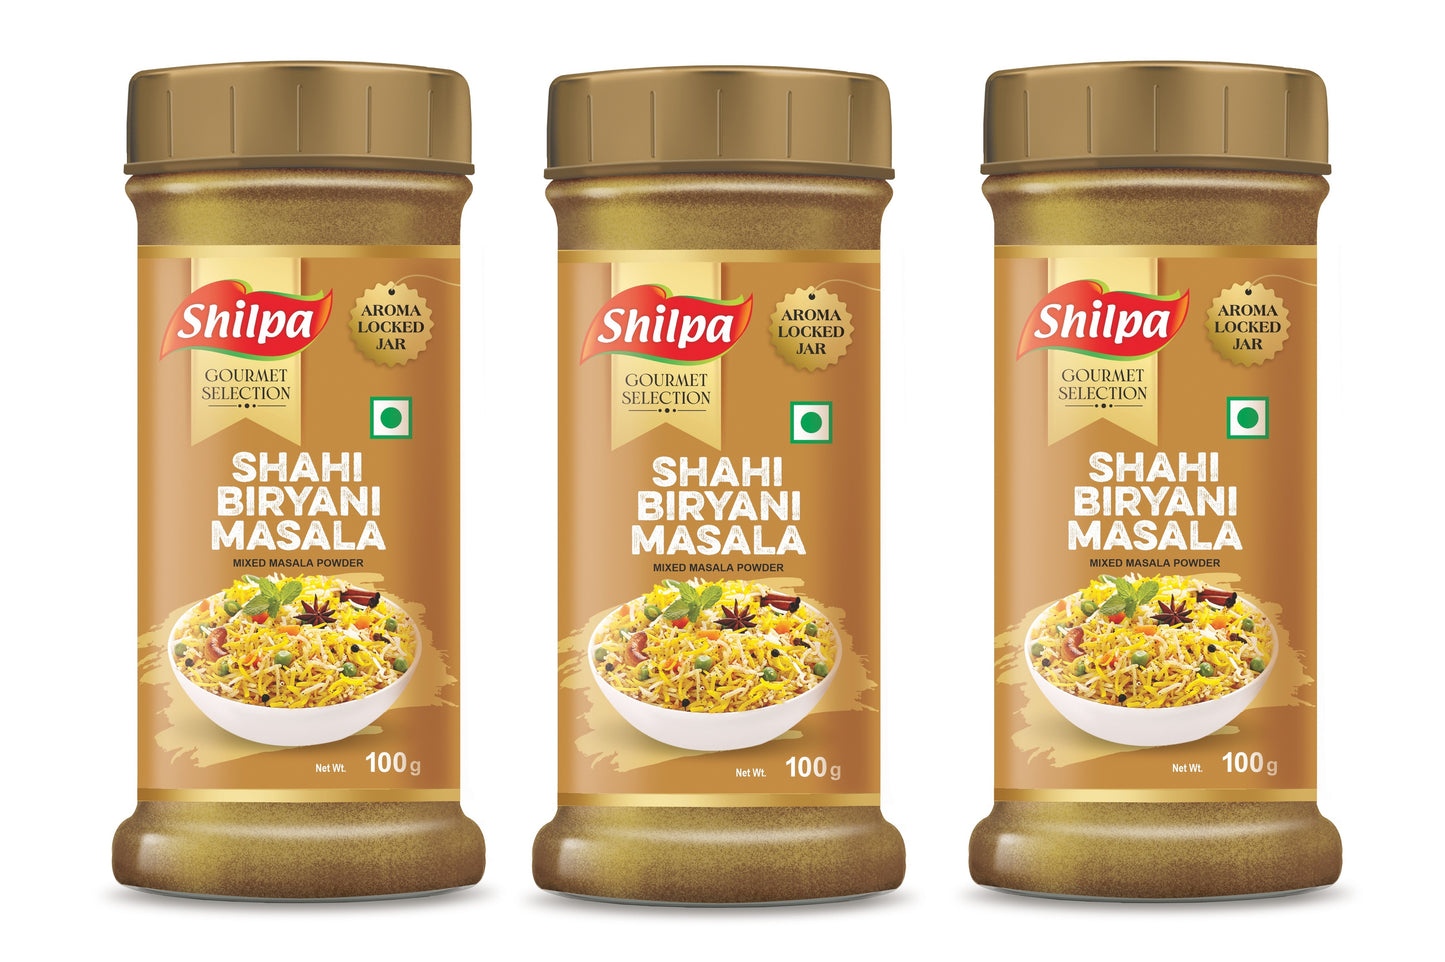 Shilpa Shahi Biryani Masala, Mixed Masala Powder 100g Jar